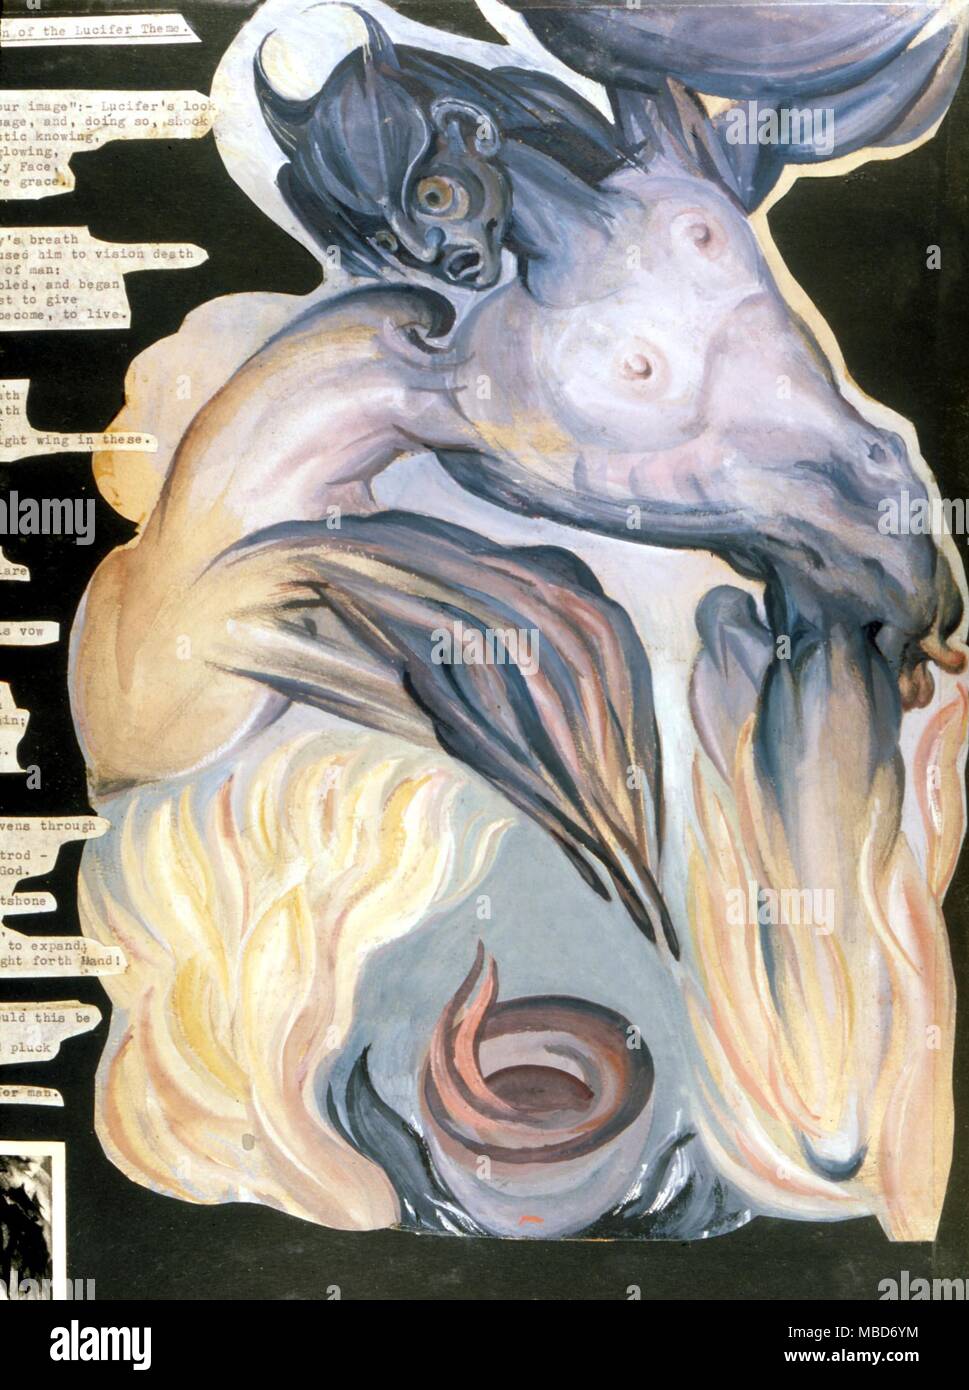 Luzifer - Studie für das Malen von Lucifer's Konzeption der rechten Hand - aus einem Skizzenbuch im Besitz der Künstlerin Fay Pomerance Stockfoto